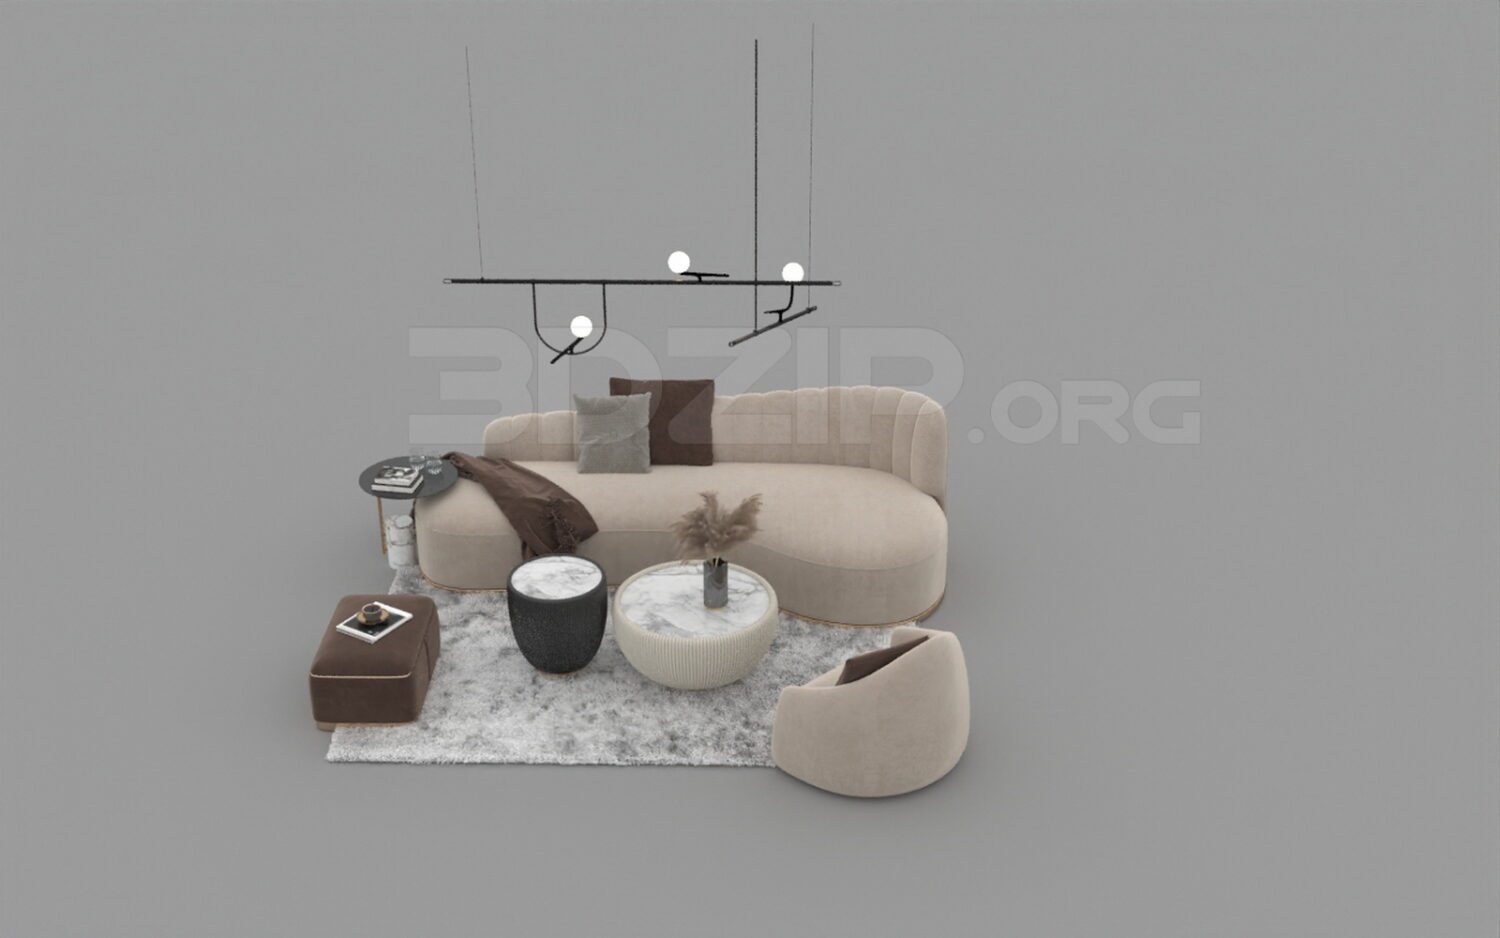 3632. Free 3D Sofa Model Download